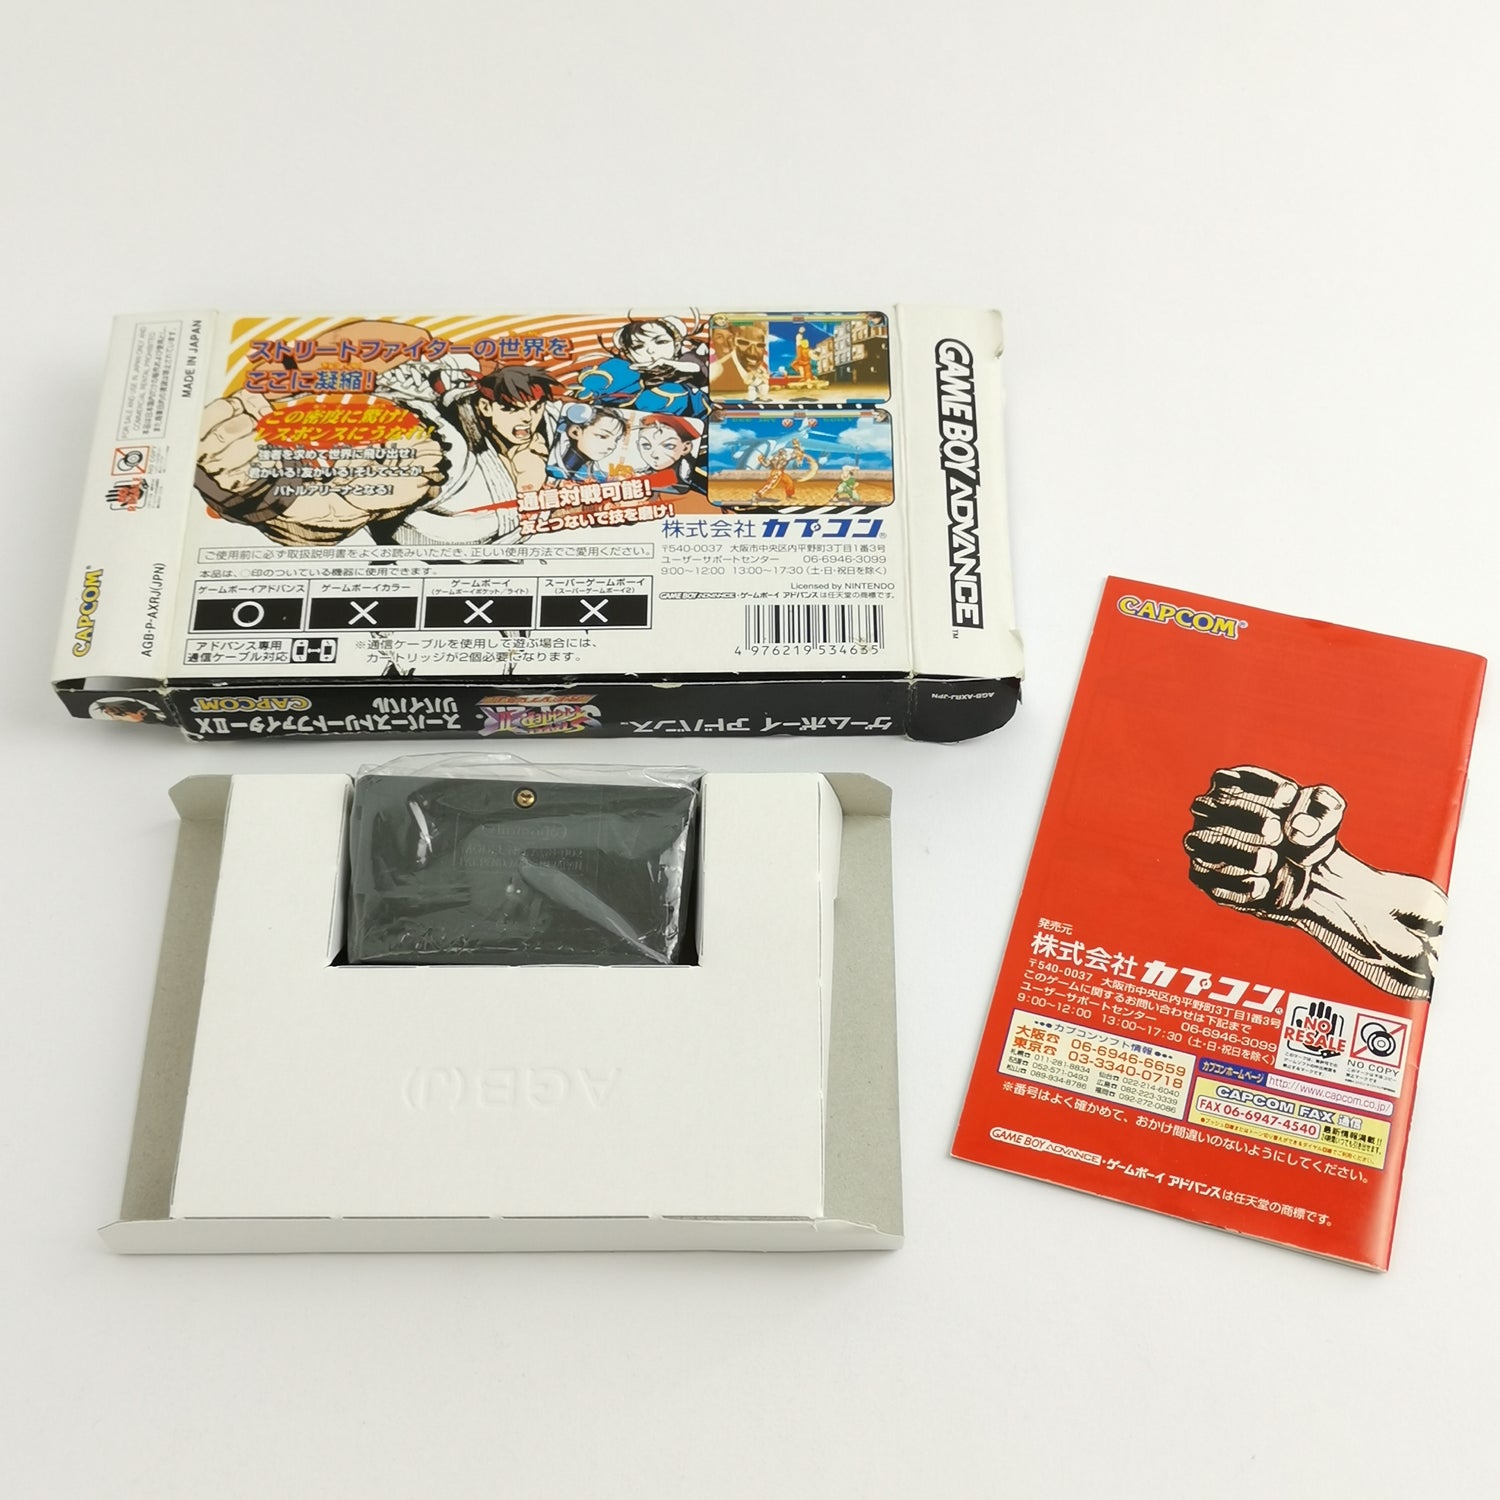 Nintendo Game Boy Advance Spiel : Street Fighter II 2 Revival - OVP JAPAN GBA